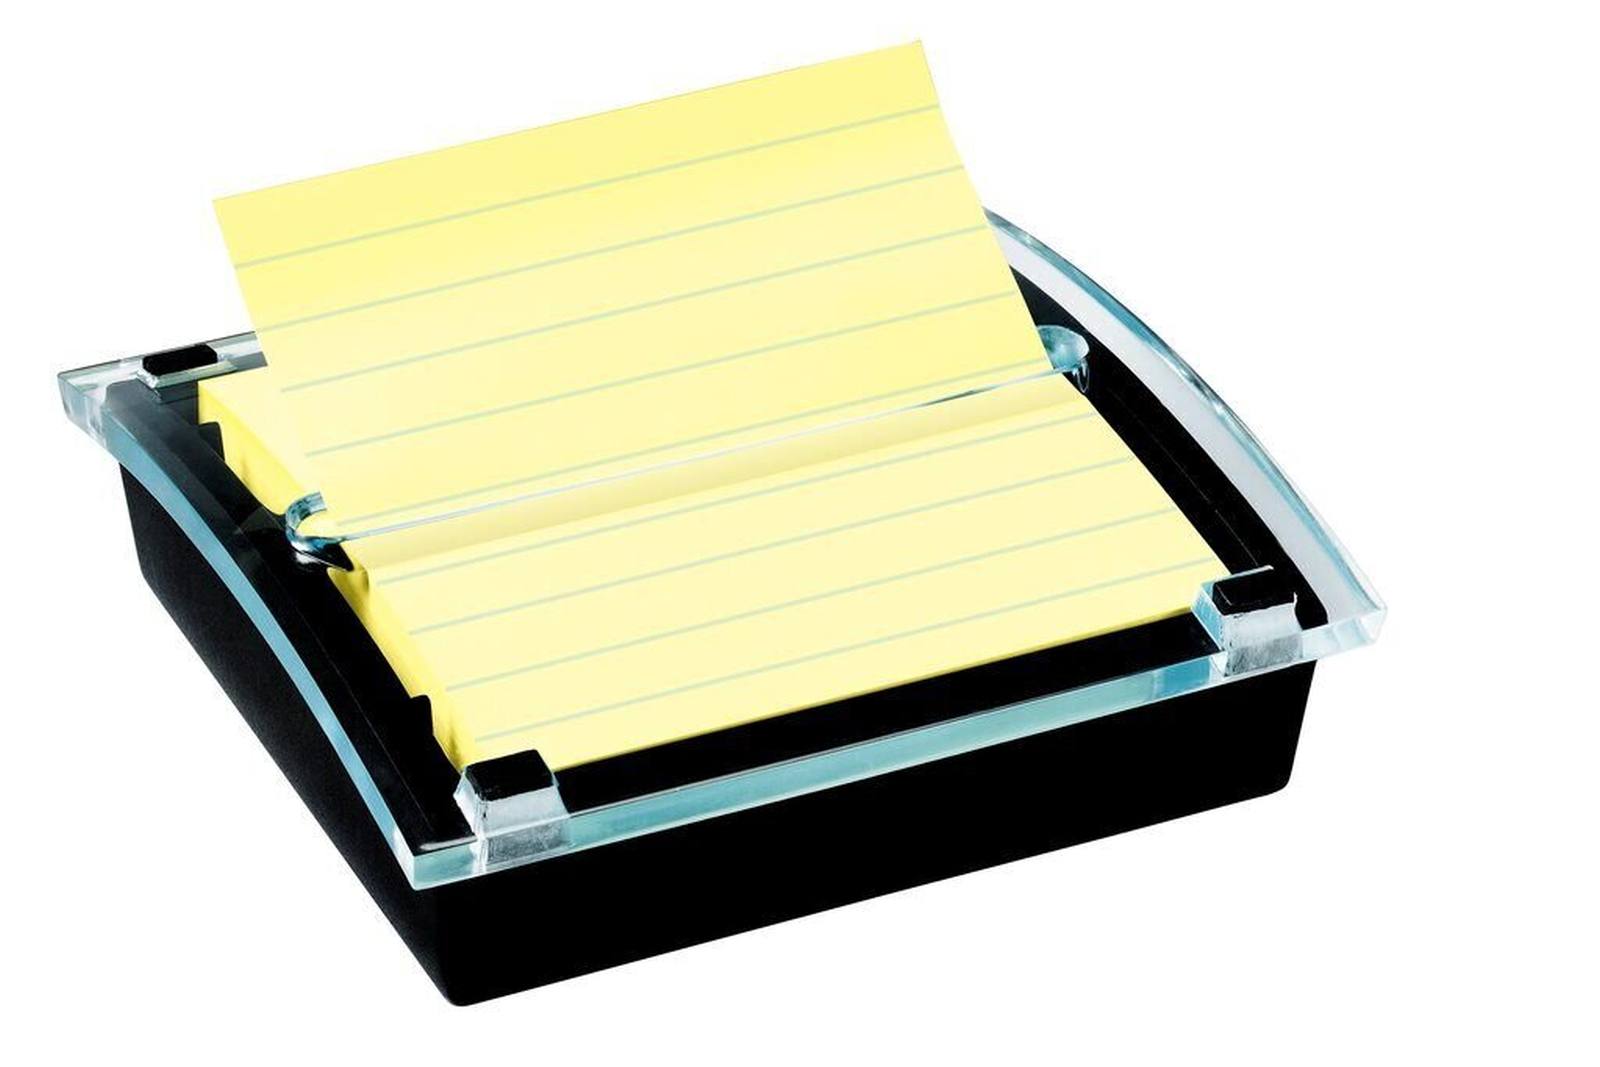 3M Post-it Distributeur de Super Sticky Z-Notes DS440SCY, 1 distributeur de Z-Notes, noir/transparent y compris 1 bloc de Post-it Super Sticky Z-Notes de 90 feuilles, jaune, ligné, 101 mm x 101 mm, certifié PEFC